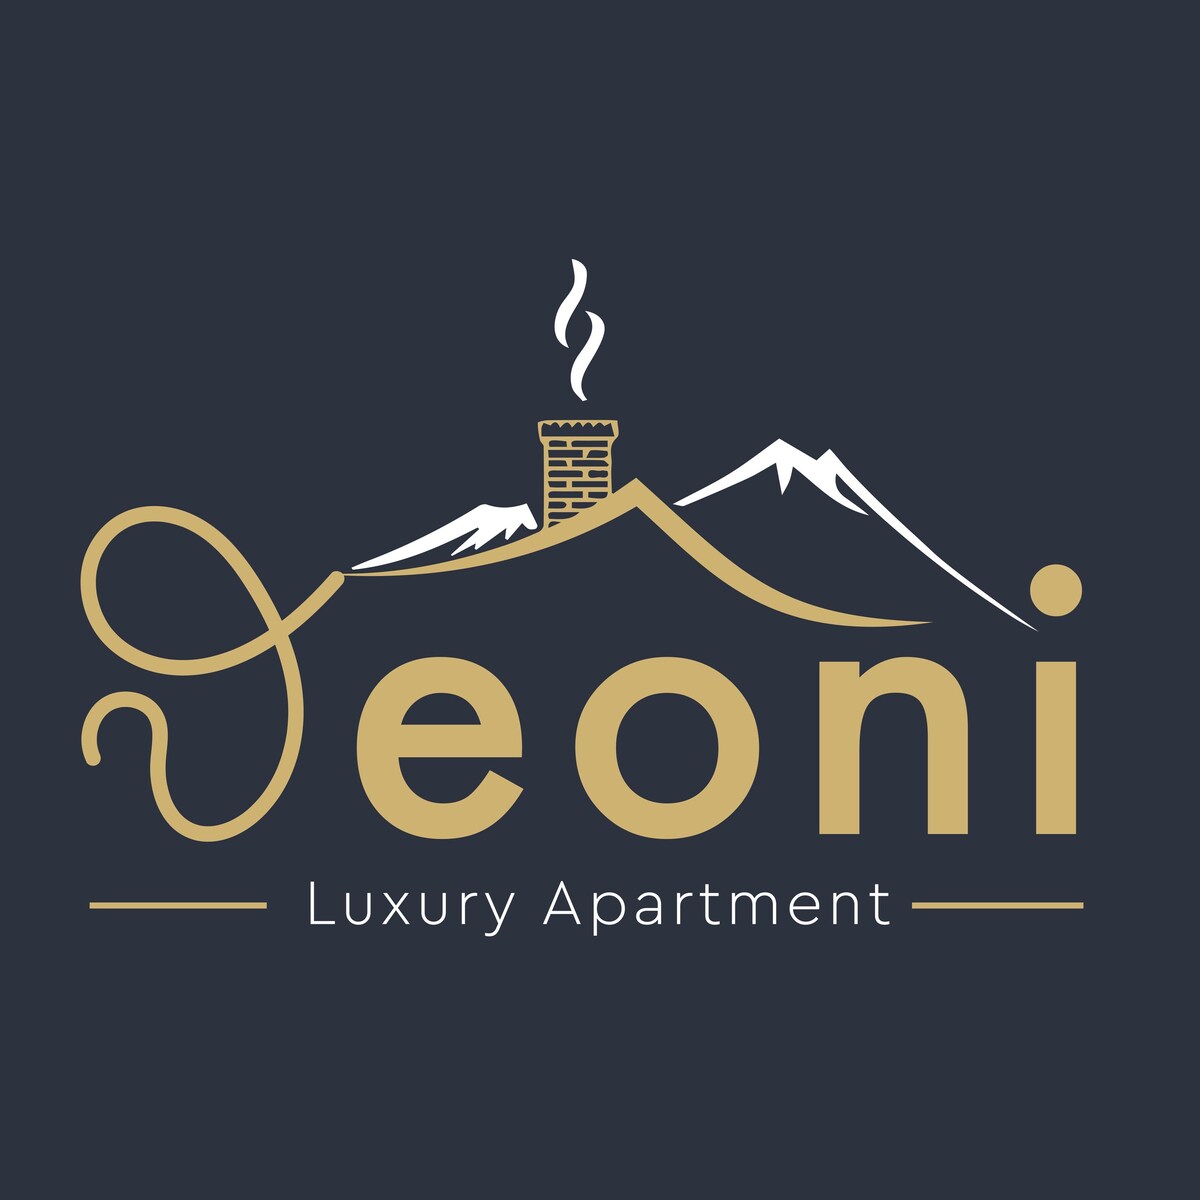 Θeoni Luxury Apartment